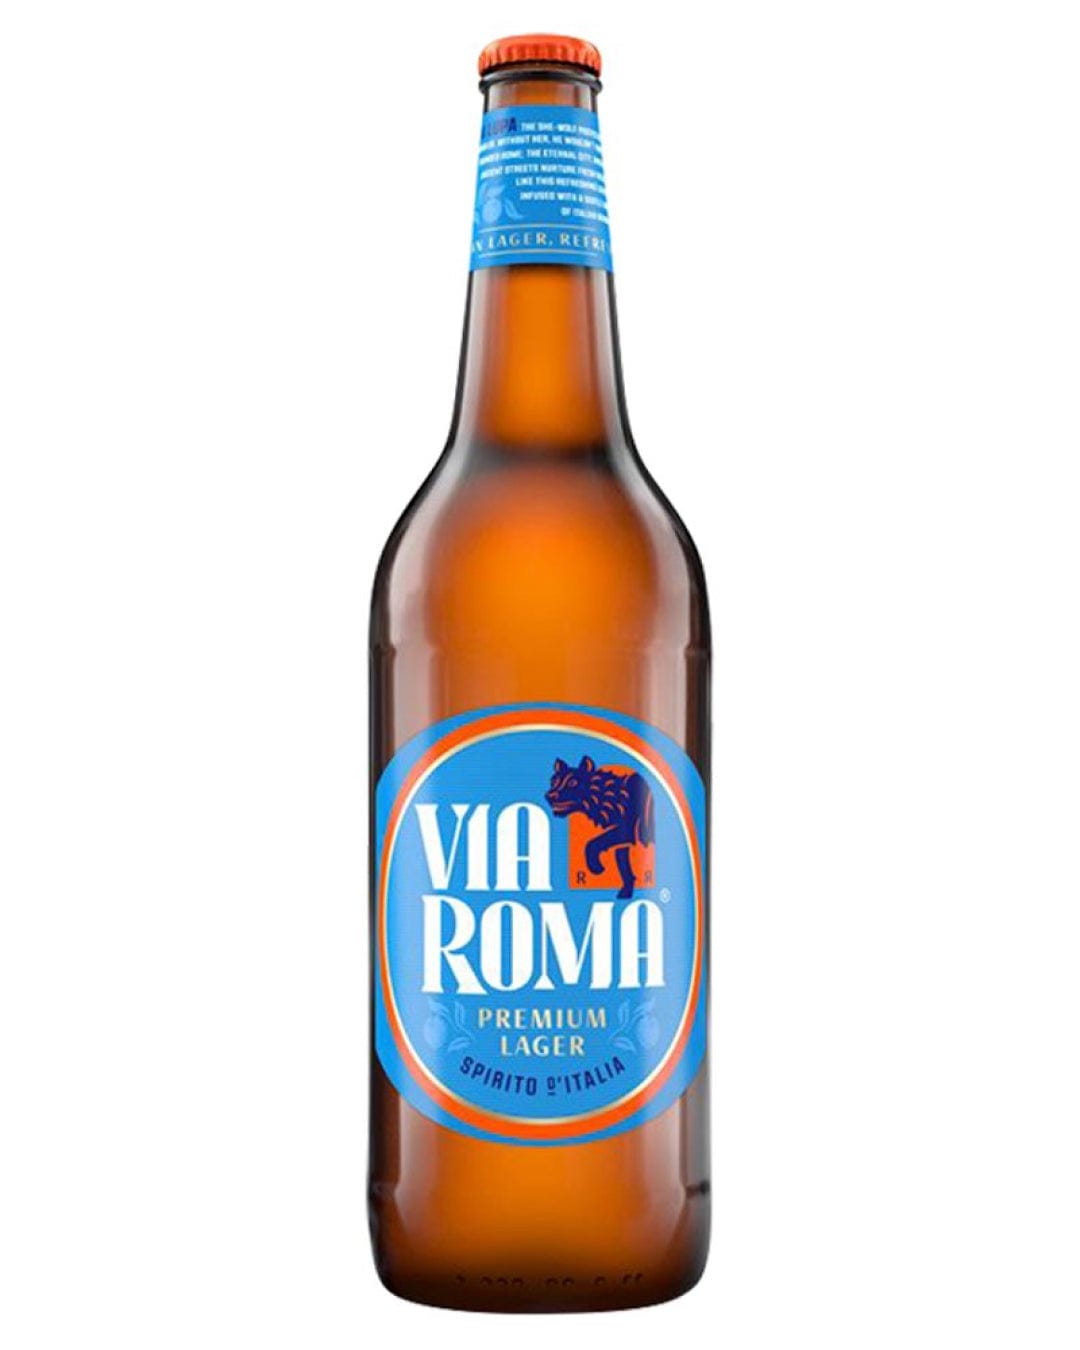 Via Roma Premium Lager Beer Multipack, 12 x 660 ml Beer